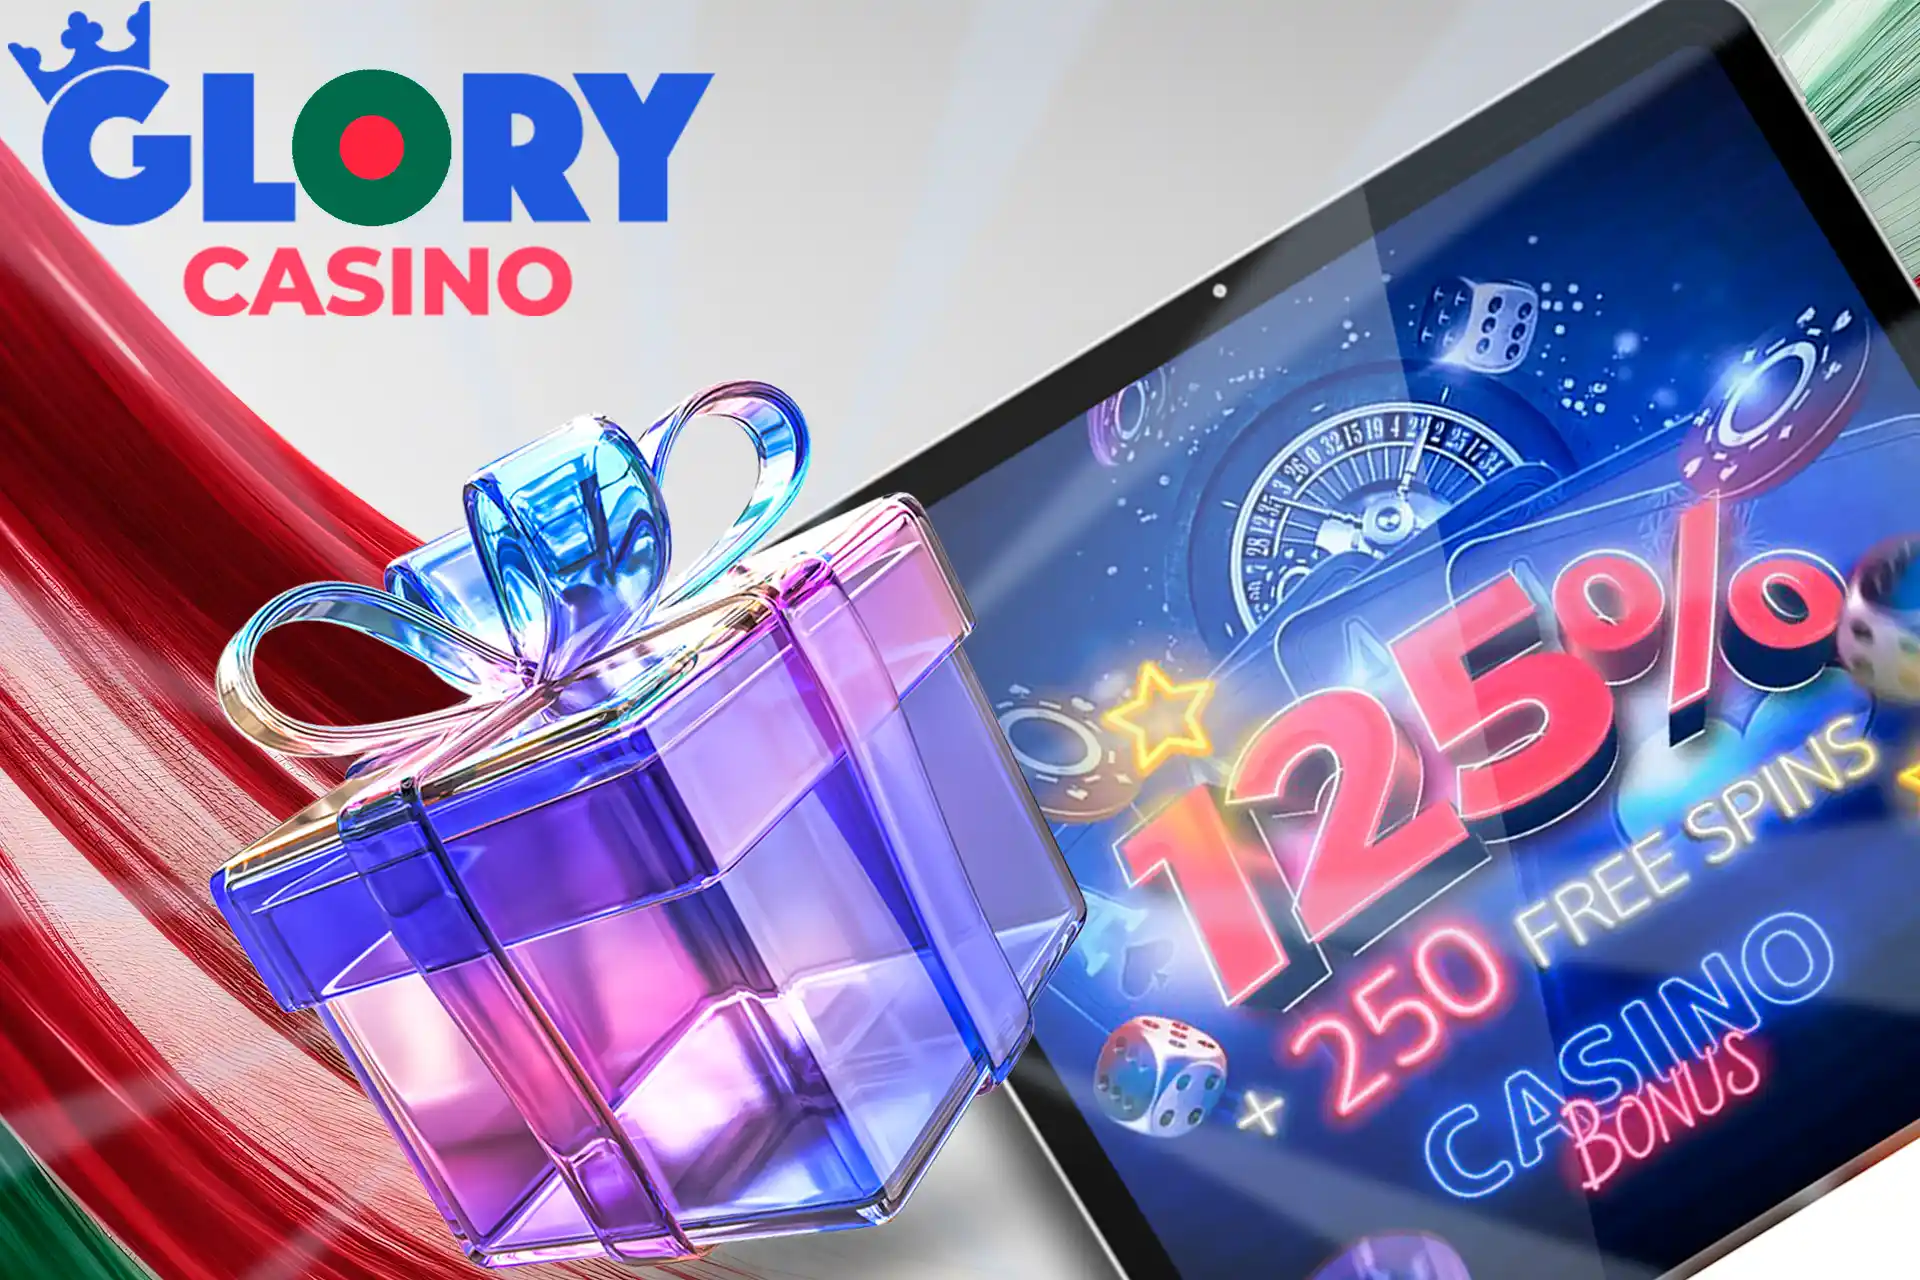 Glory Casino Bangladesh main bonus